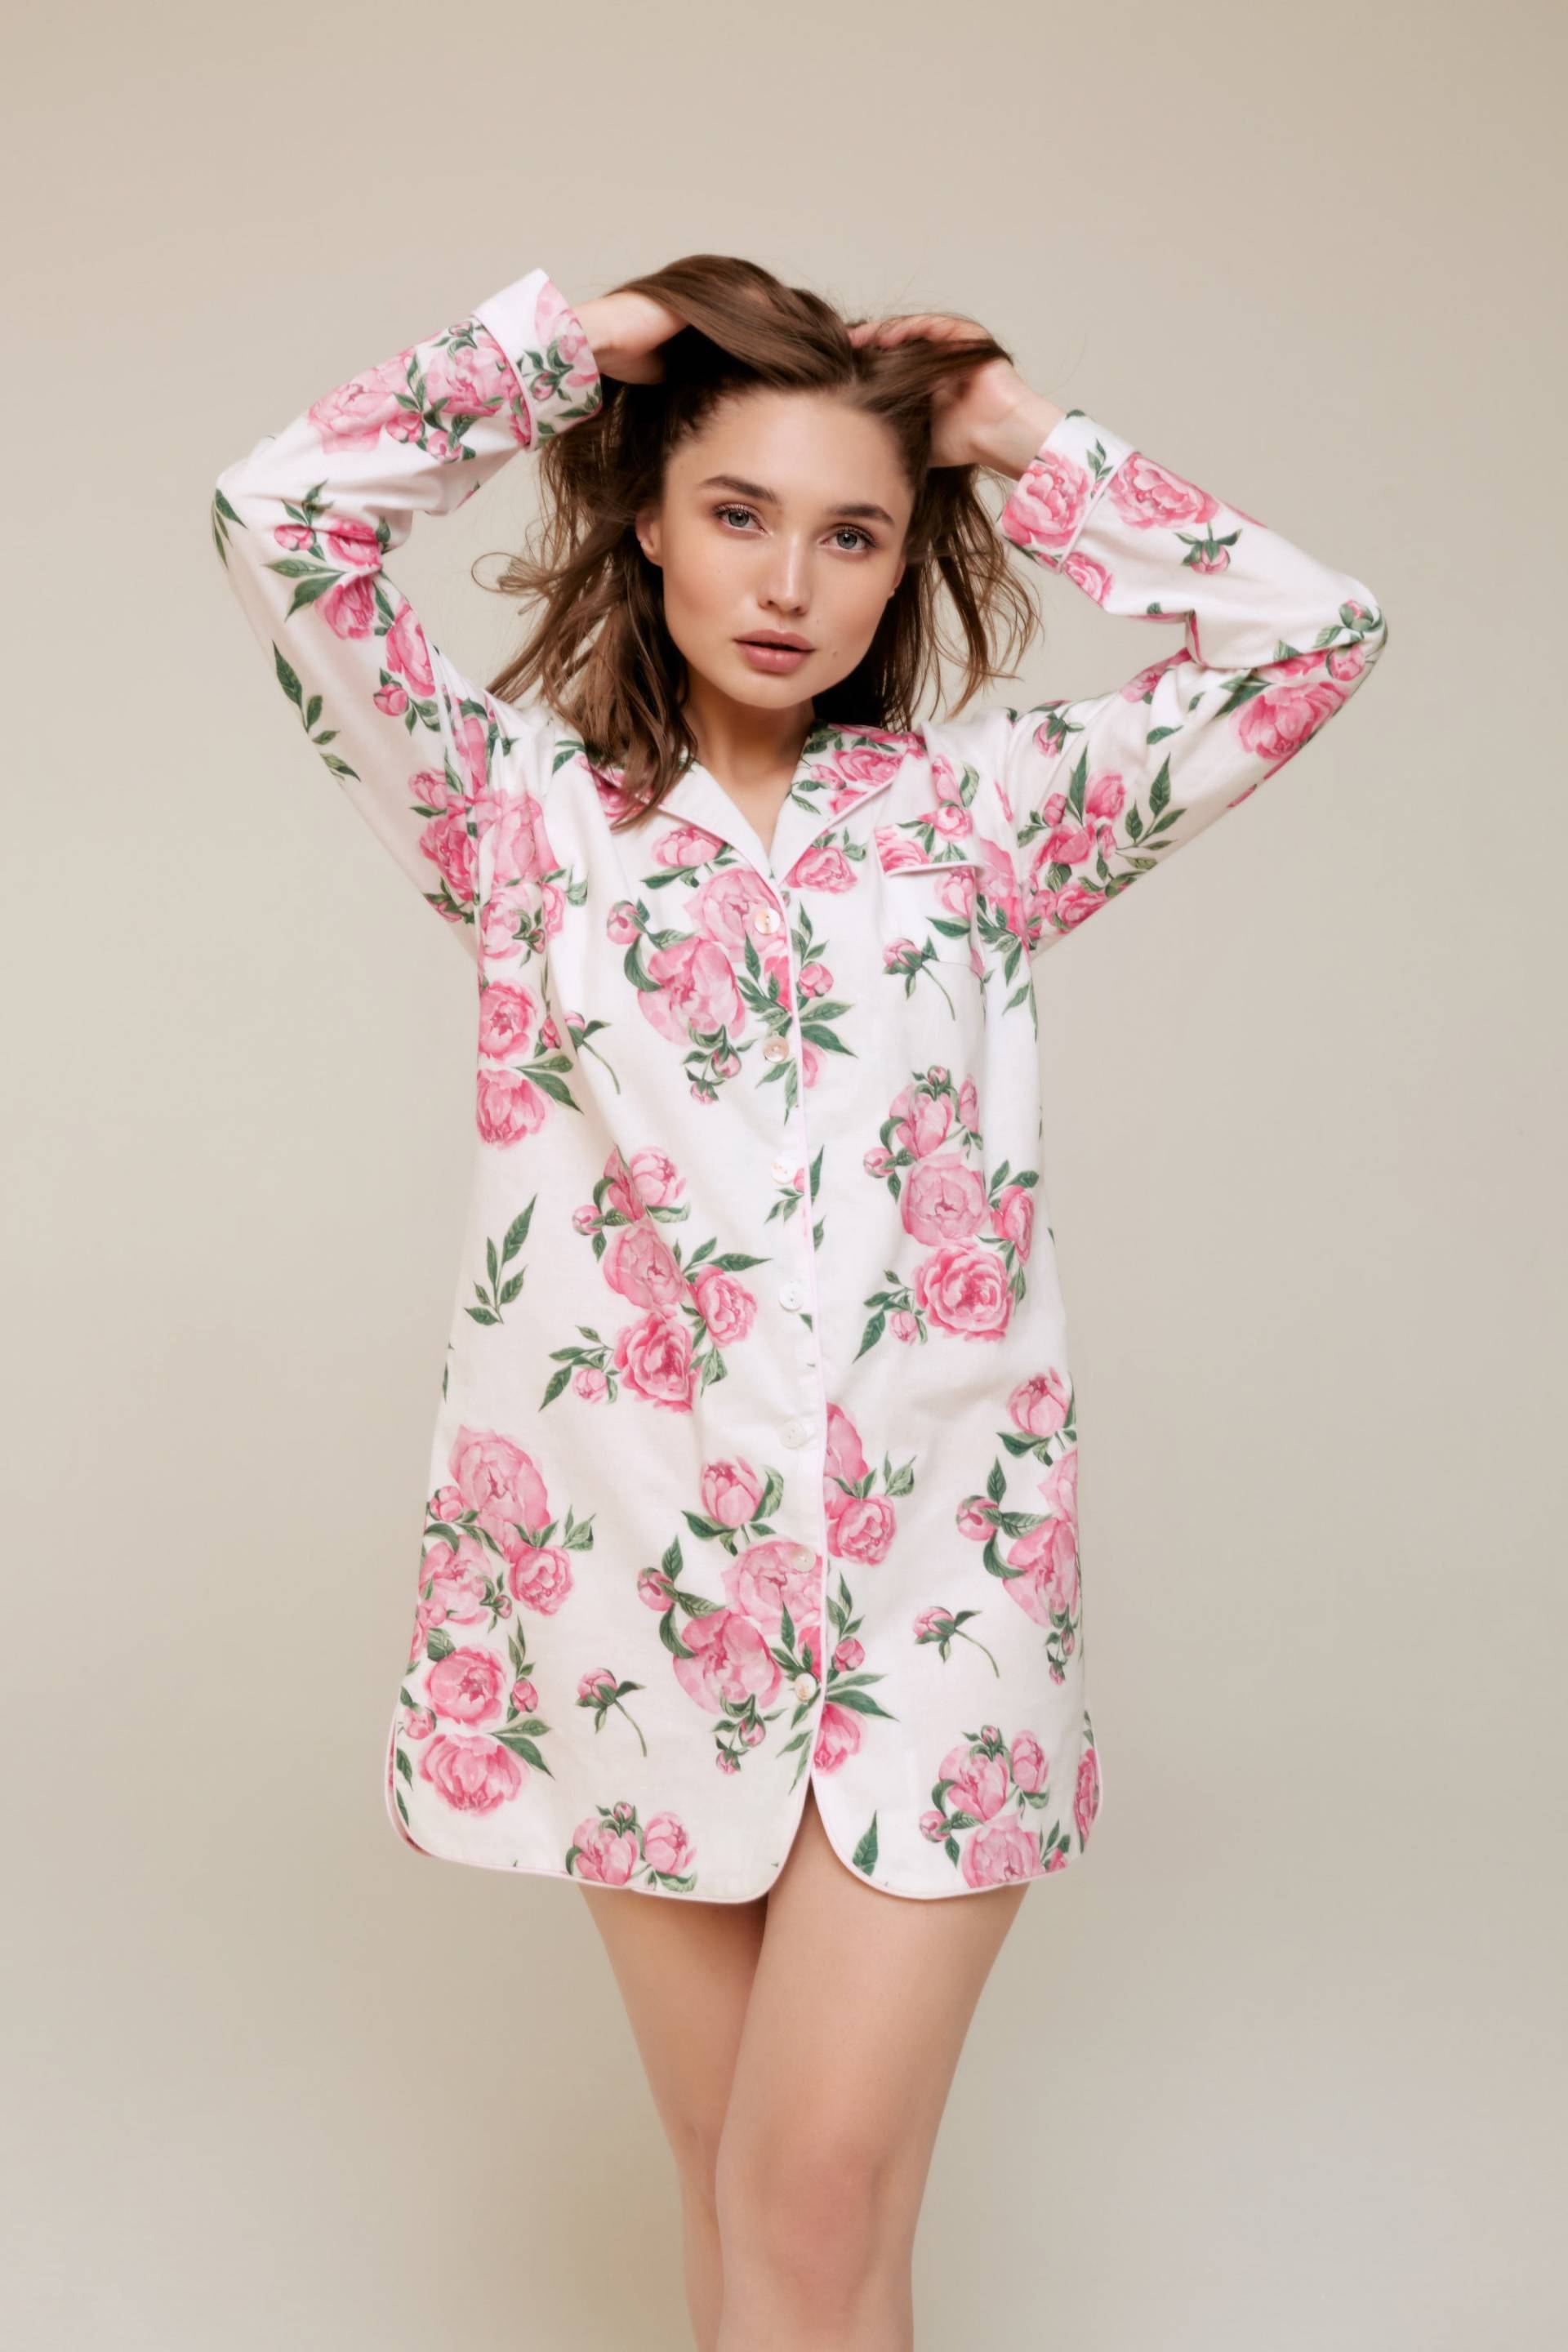 Frauen 100% Bio-Baumwolle Nachthemd Pyjama Off-White Graphite Print Weiche Haut-Freundliches Handgemachtes Geschenk Für Sie von Mellmony